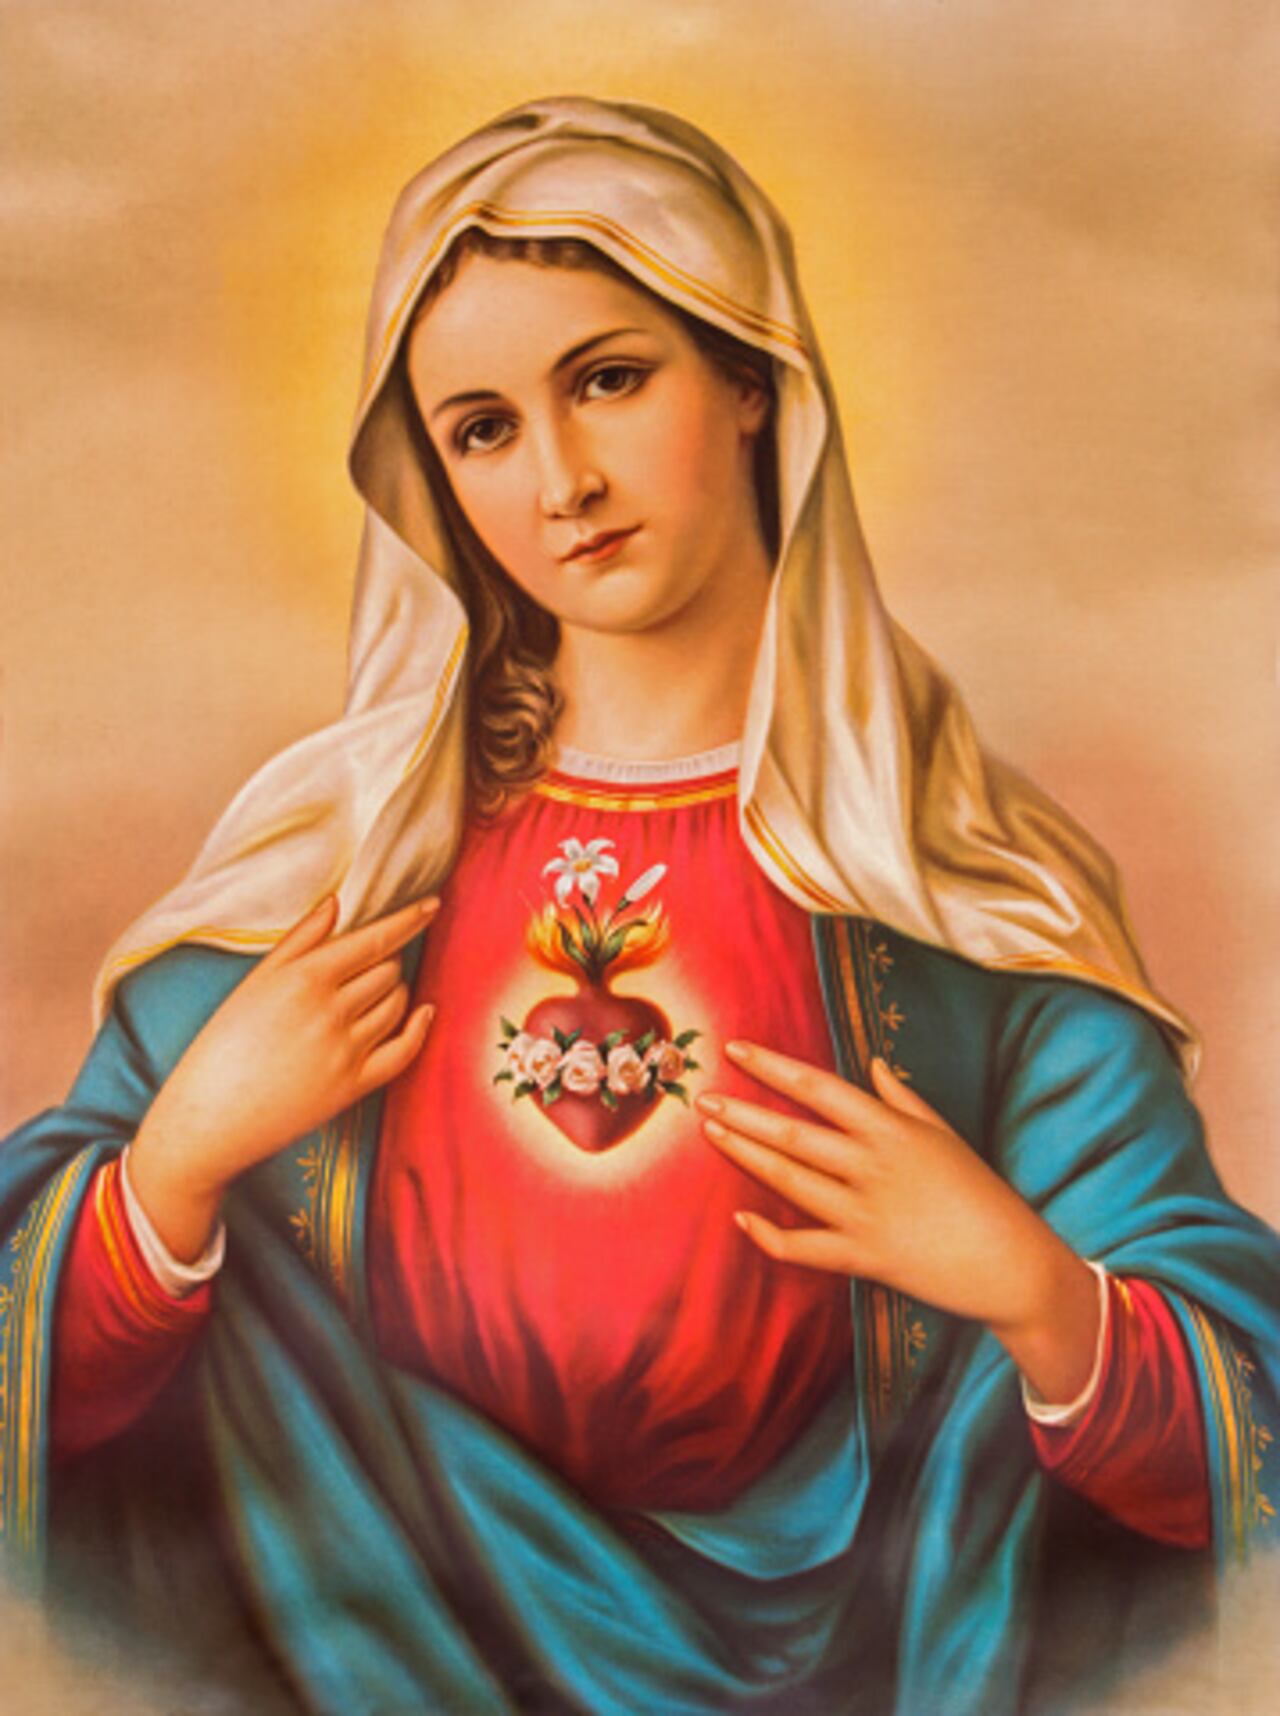 La Virgen María es la santa que interviene por la salud.